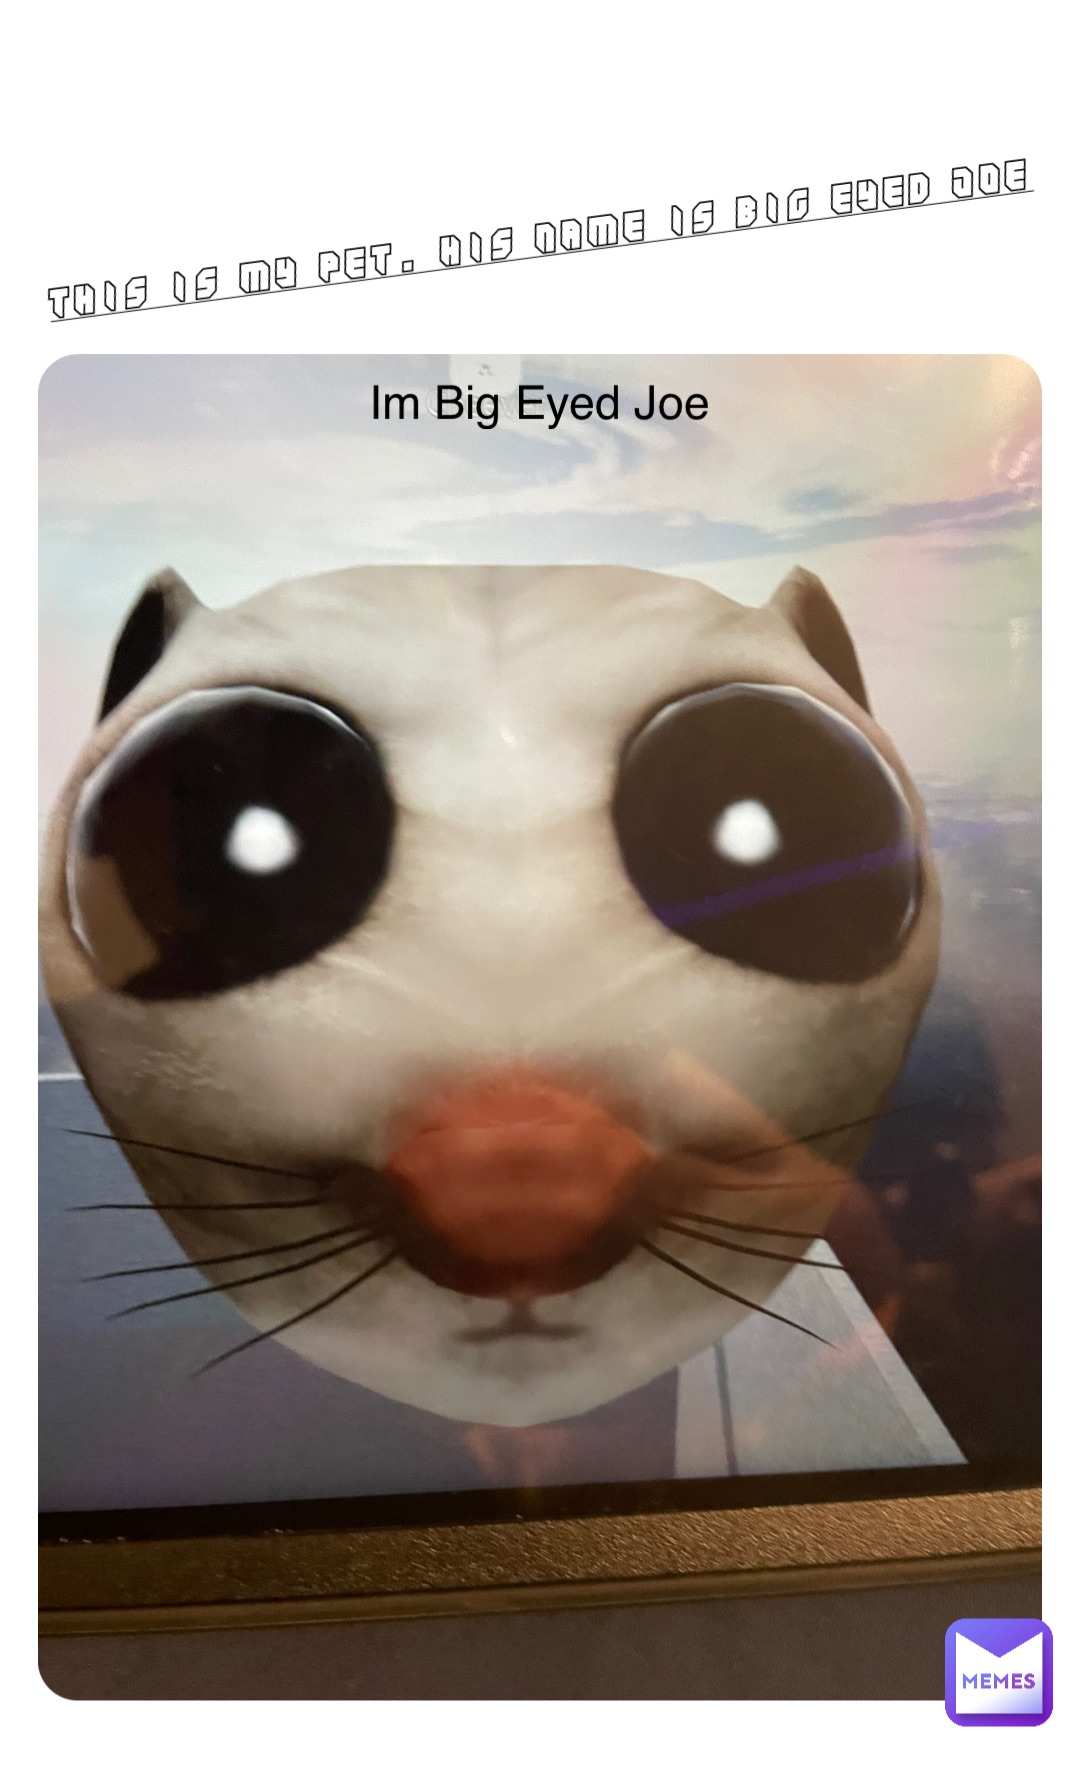 This is my pet. His name is Big Eyed Joe Im Big Eyed Joe